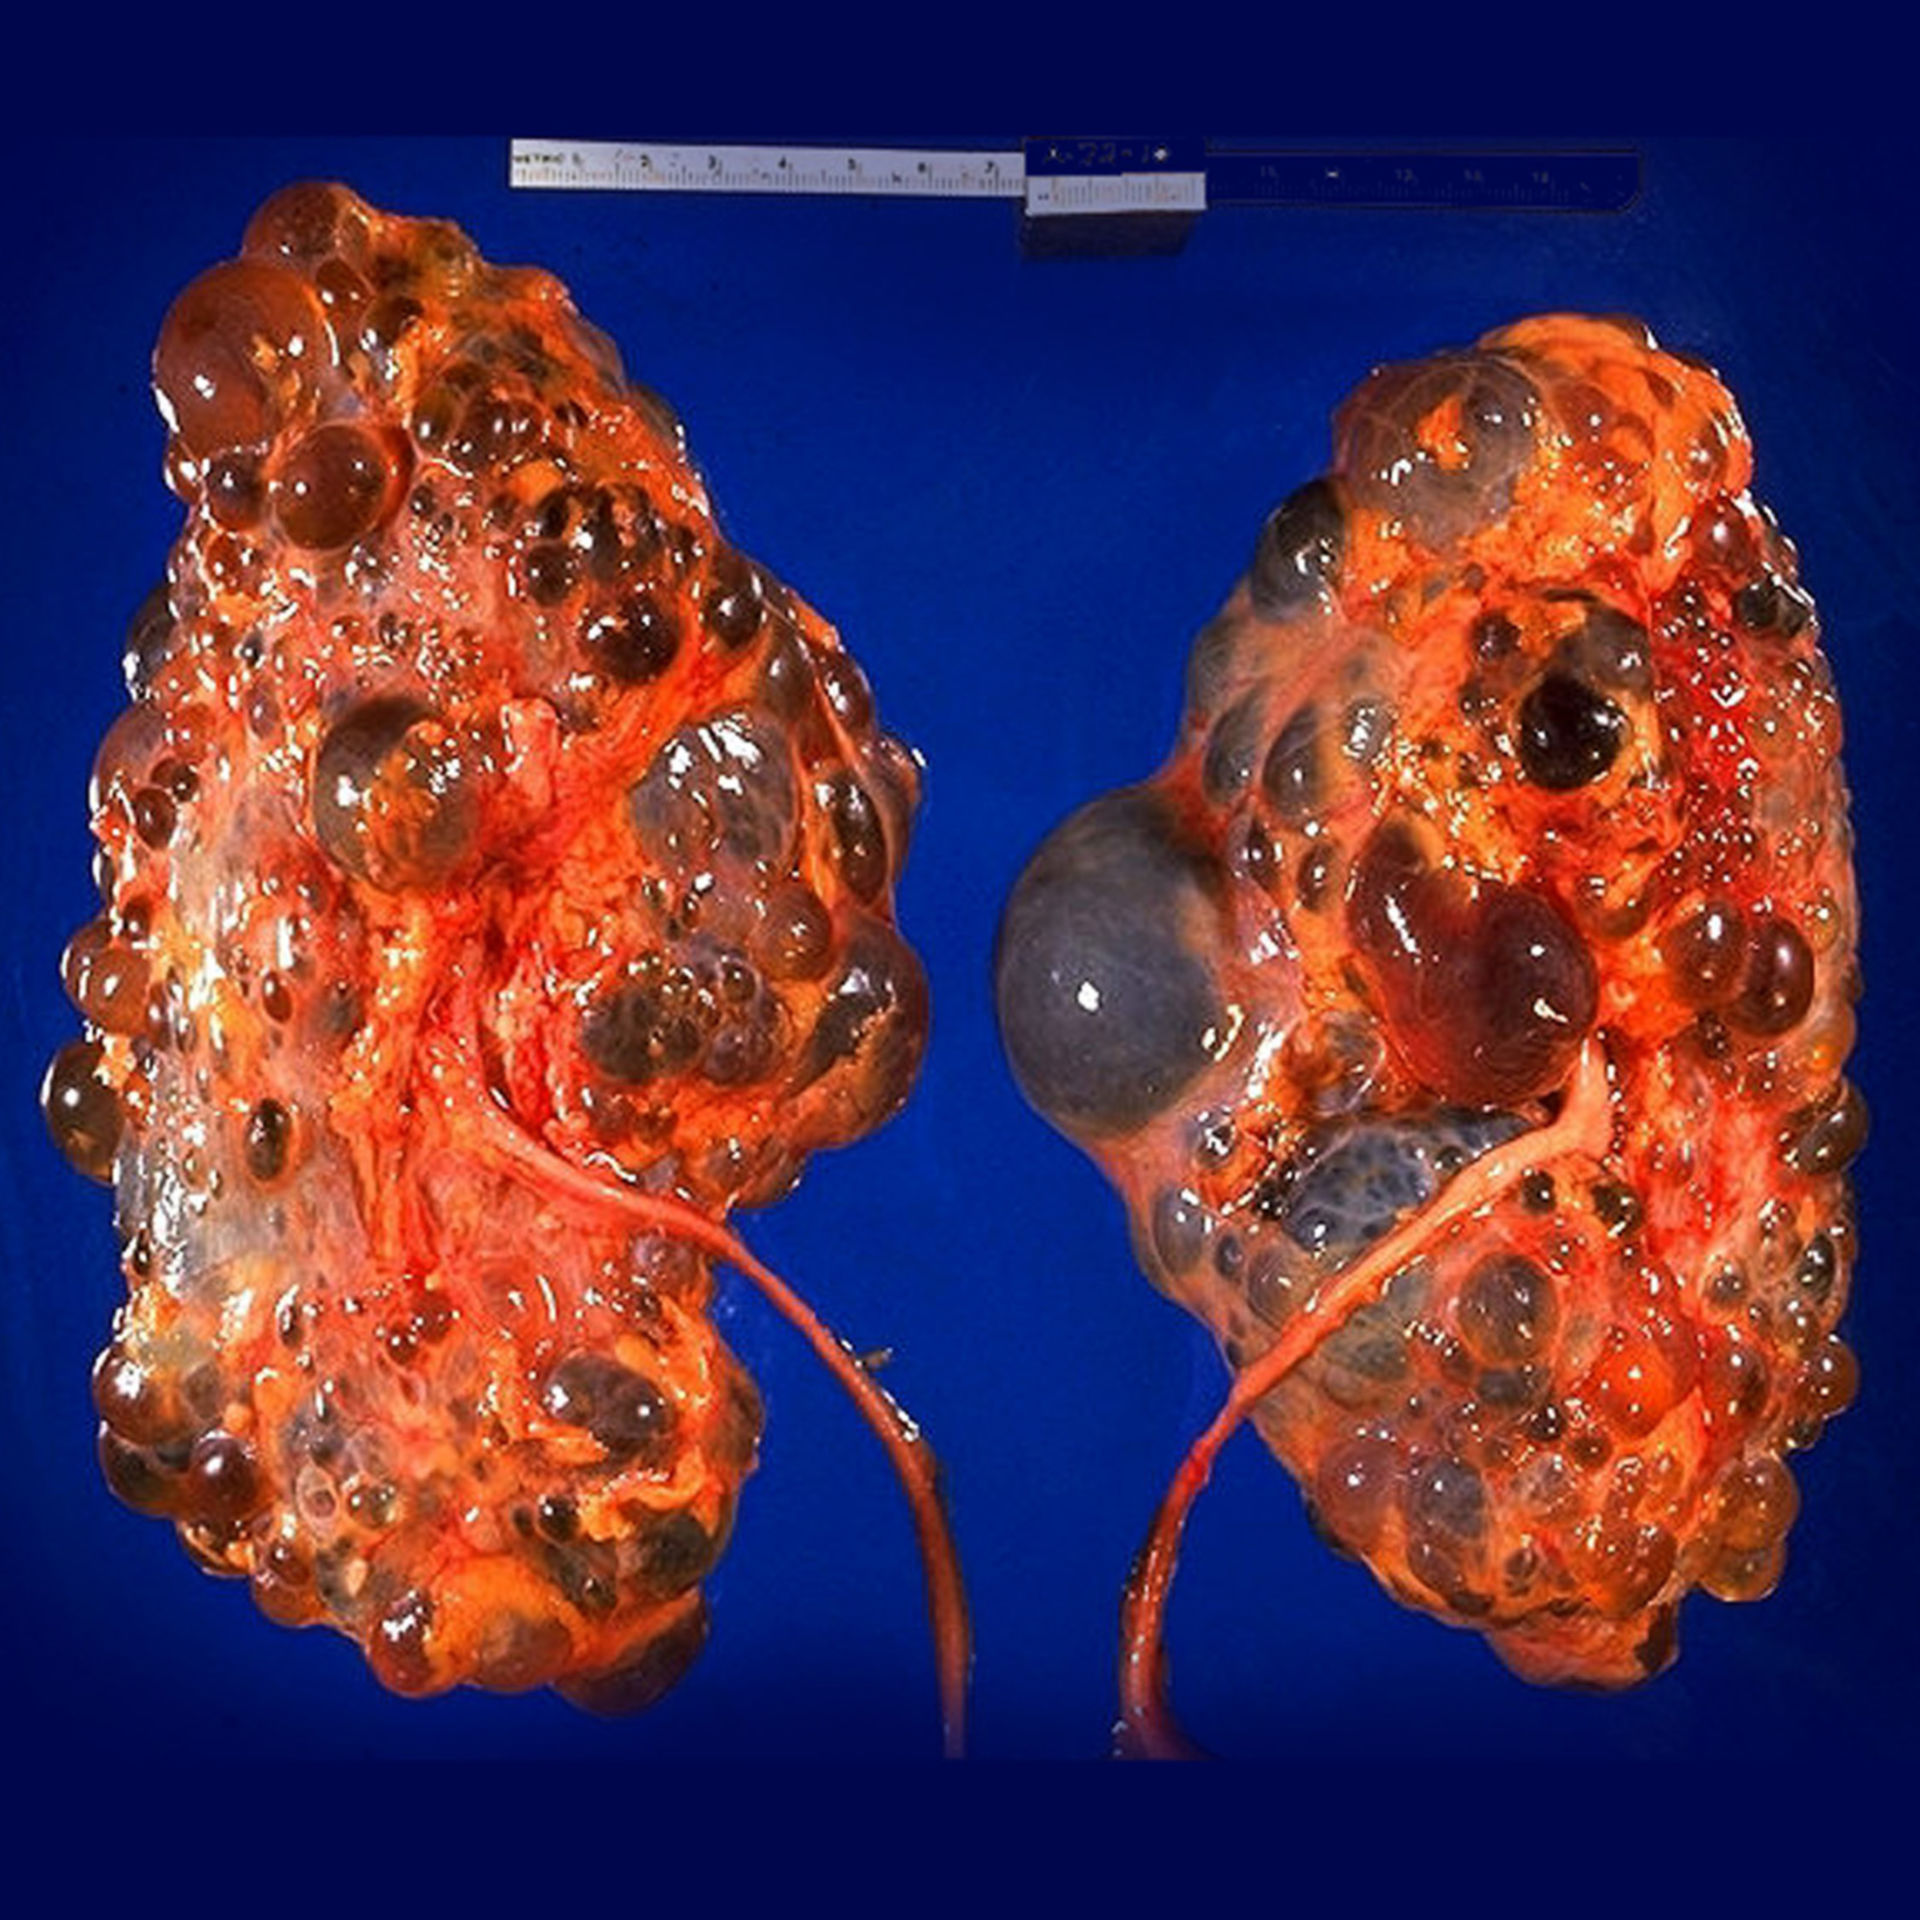 Autosomal dominant polycystic kidney disease